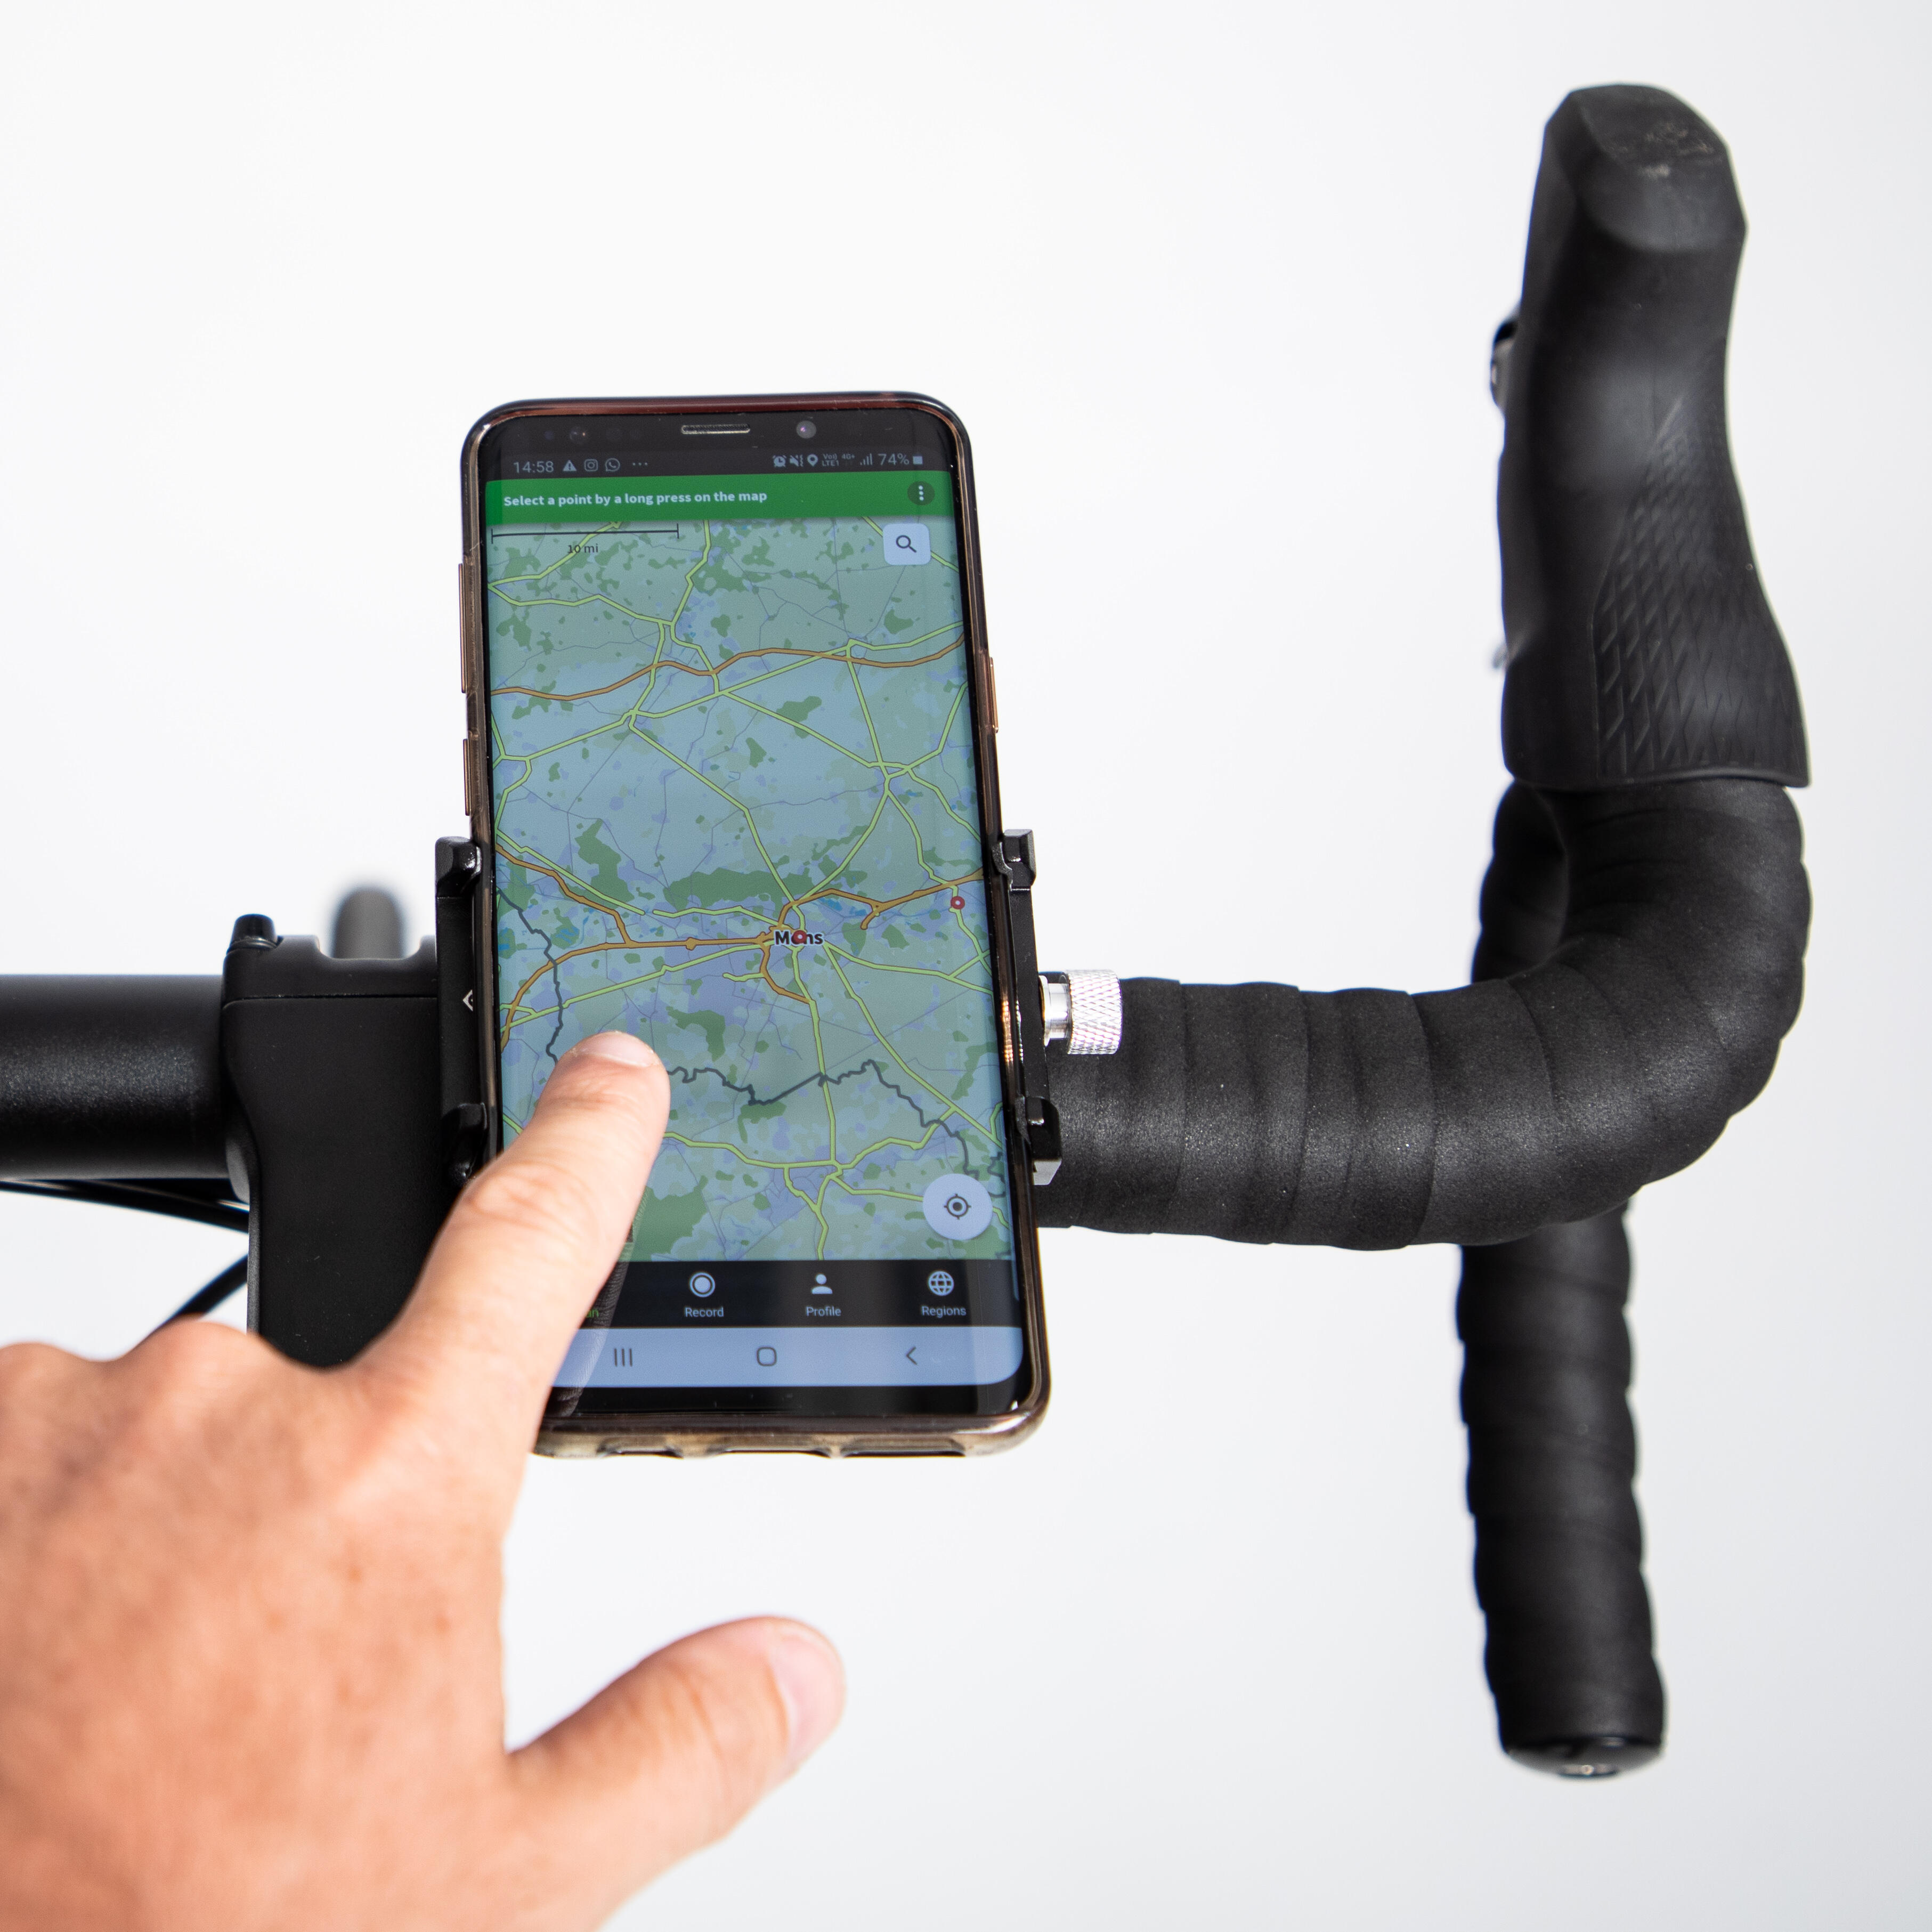 Suporte telemóvel universal compatível moto scooter bicicleta – MOTOCOSTA